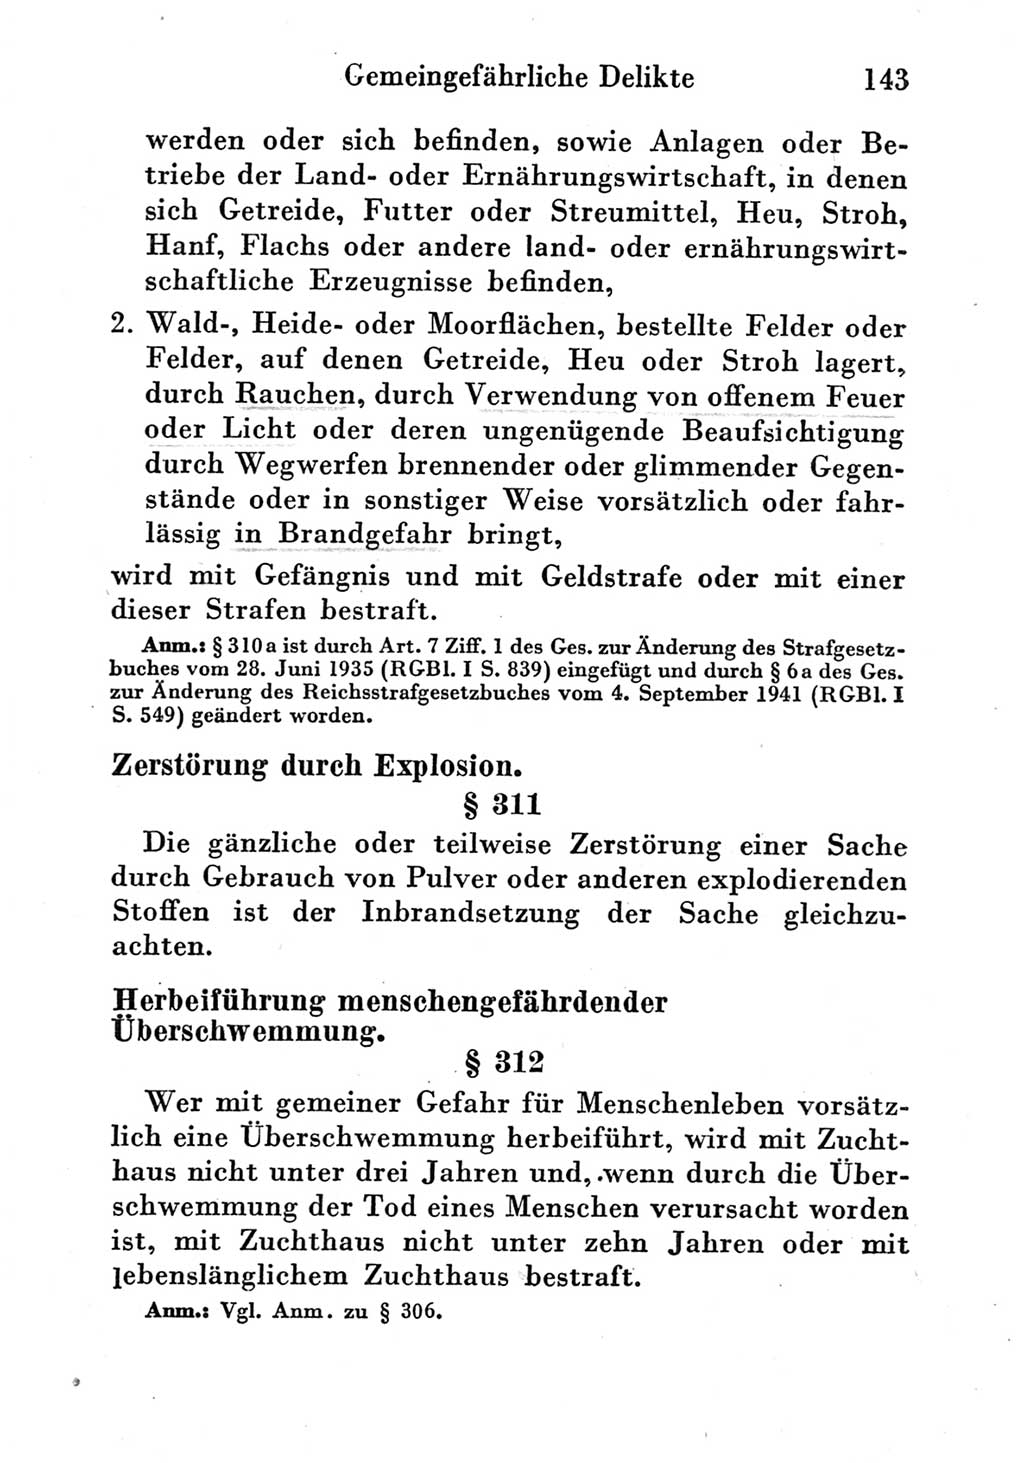 Strafgesetzbuch (StGB) und andere Strafgesetze [Deutsche Demokratische Republik (DDR)] 1951, Seite 143 (StGB Strafges. DDR 1951, S. 143)